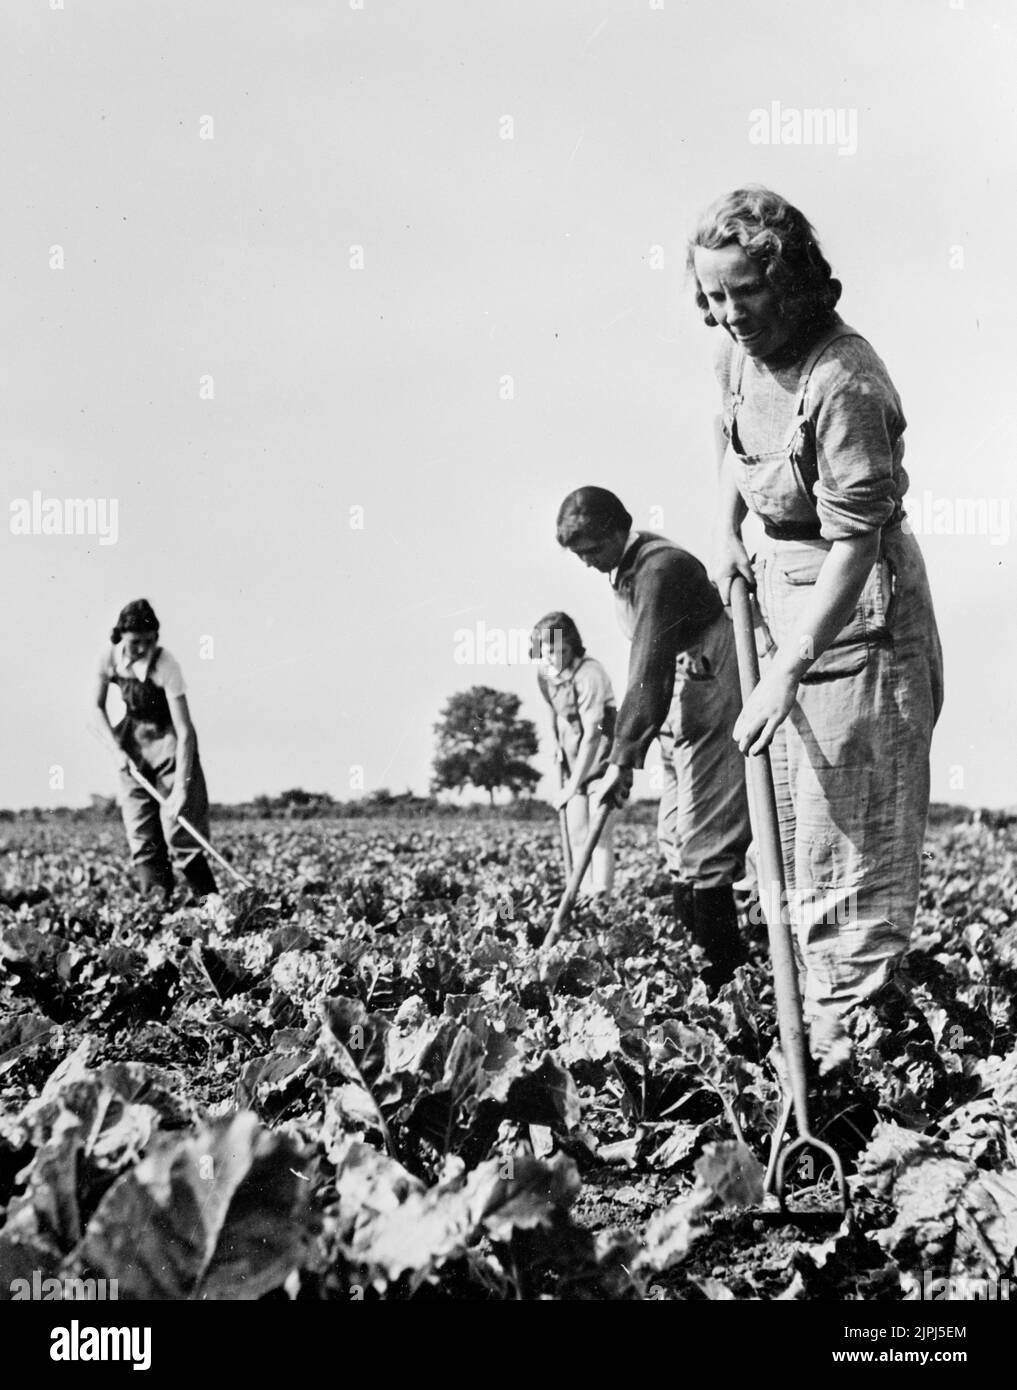 Frauen, die während des Krieges auf Feldern arbeiten, auf denen Getreide angebaut wird. 1943 die Women's Land Army (WLA) leistete während des Zweiten Weltkriegs einen wesentlichen Beitrag zur Steigerung der britischen Nahrungsmittelproduktion. Stockfoto